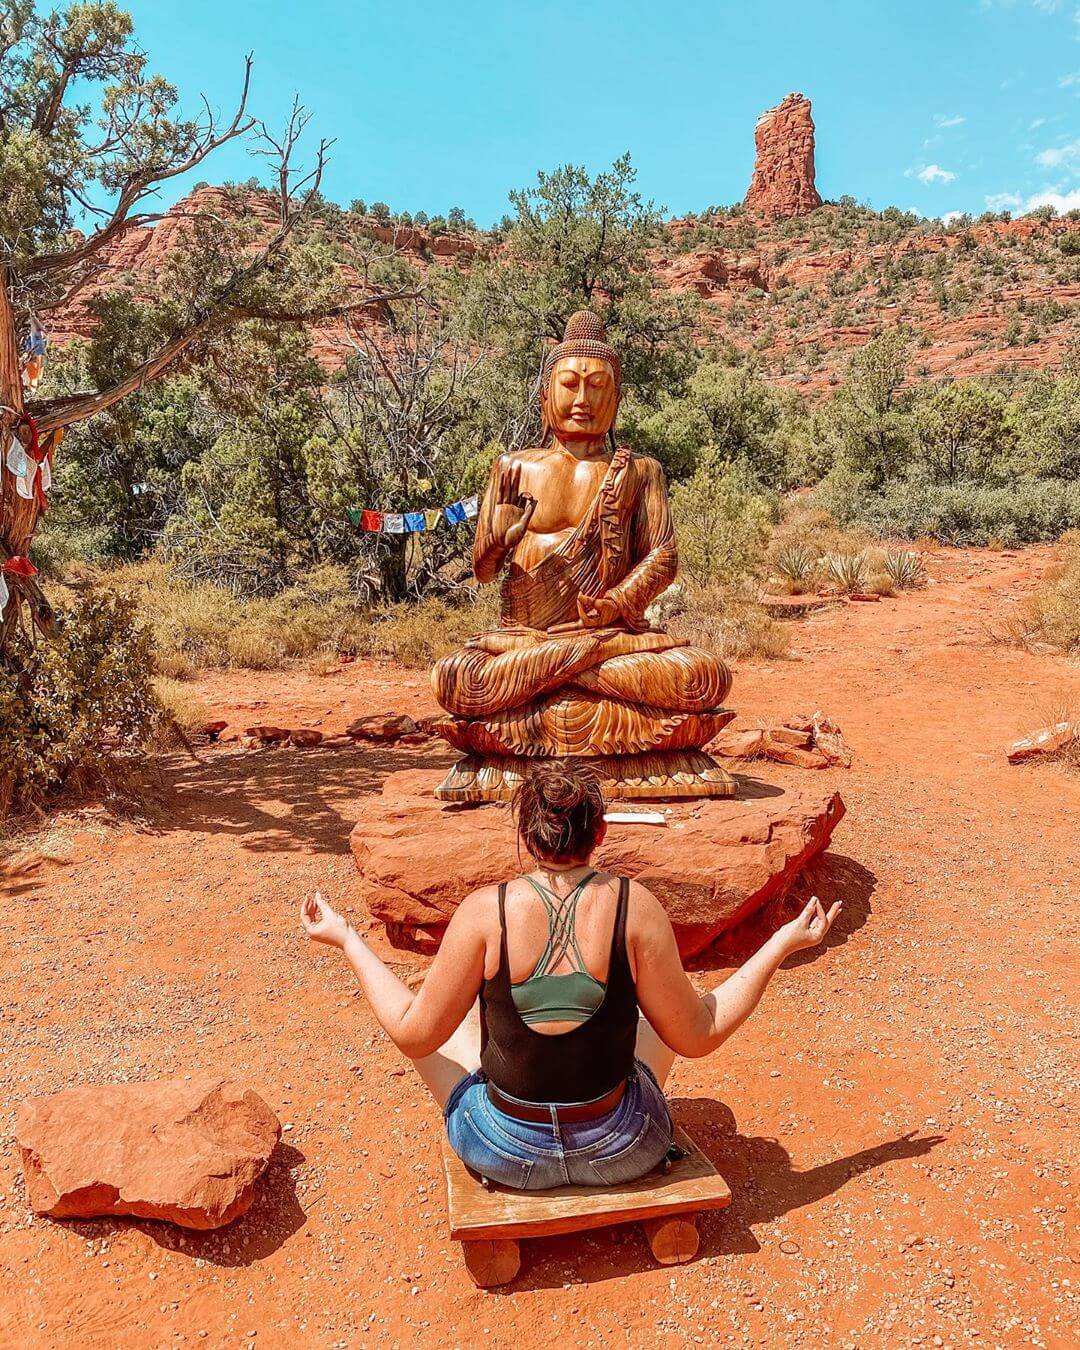 Amitabha Stupa and Peace Park underrated spots in Arizona